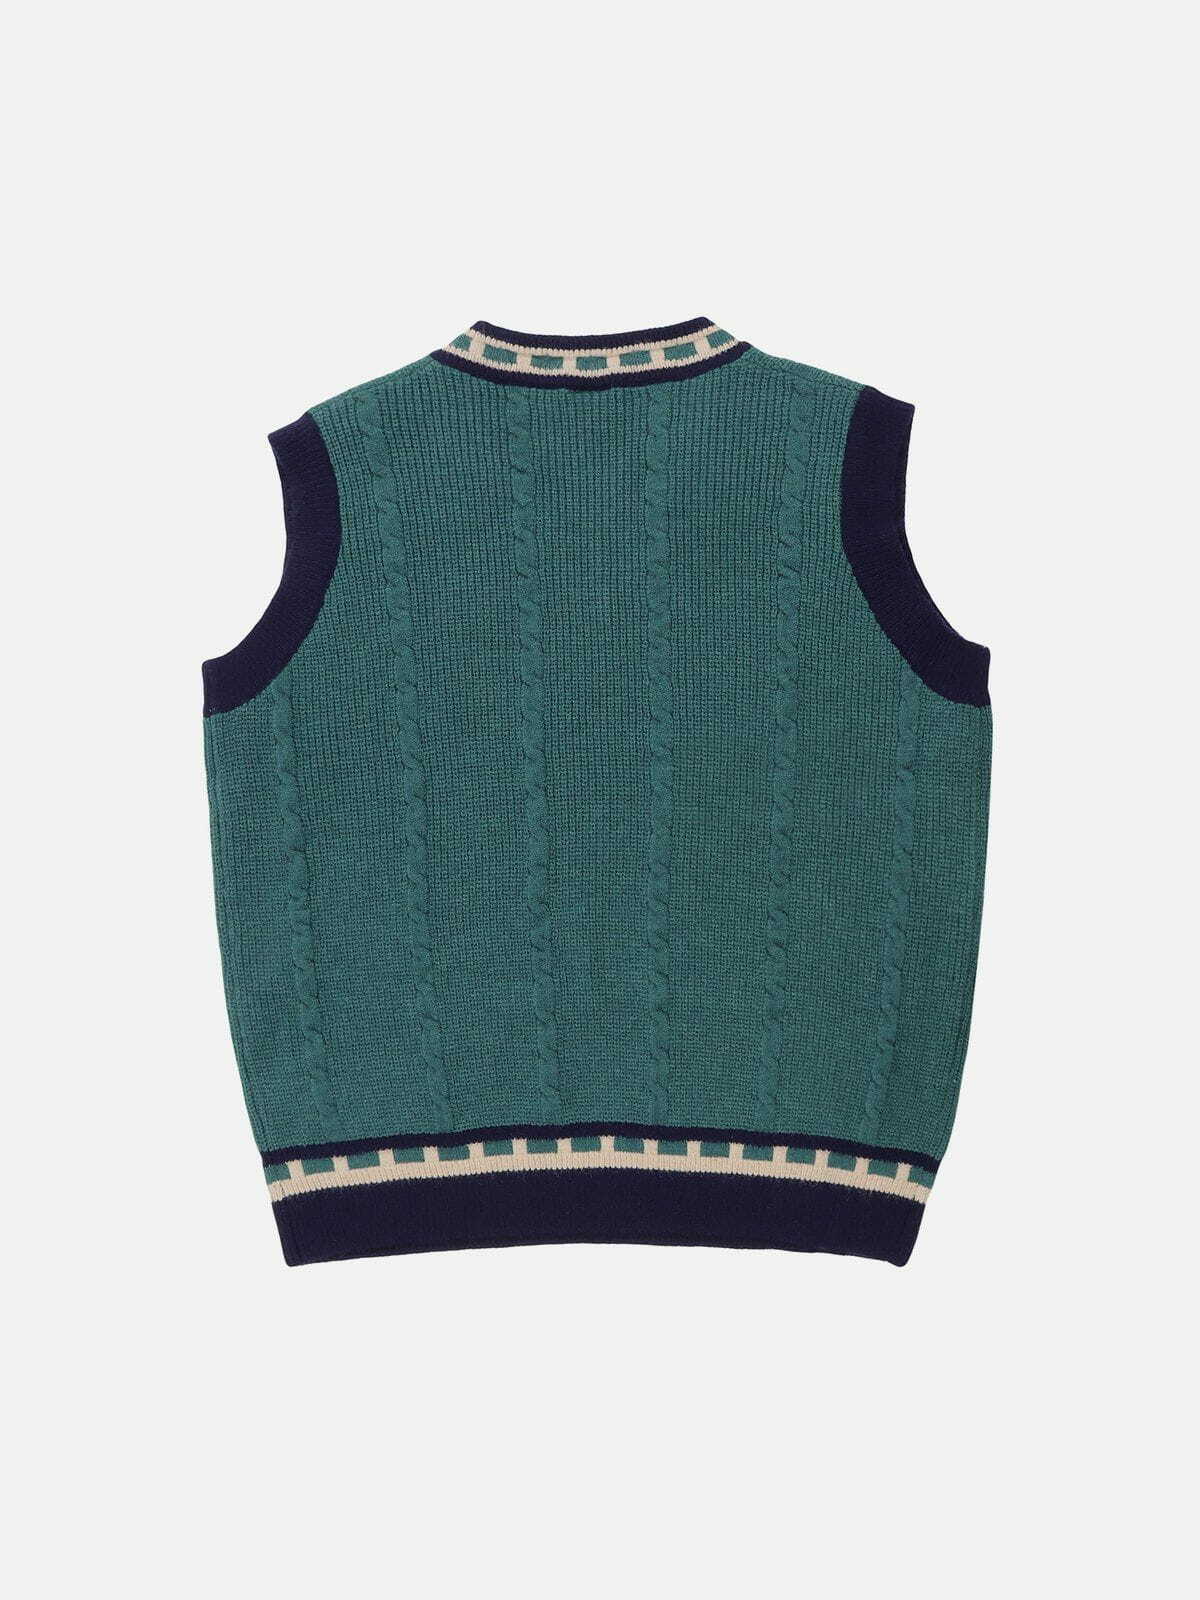 embroidered patchwork sweater vest urban fashion statement 5180